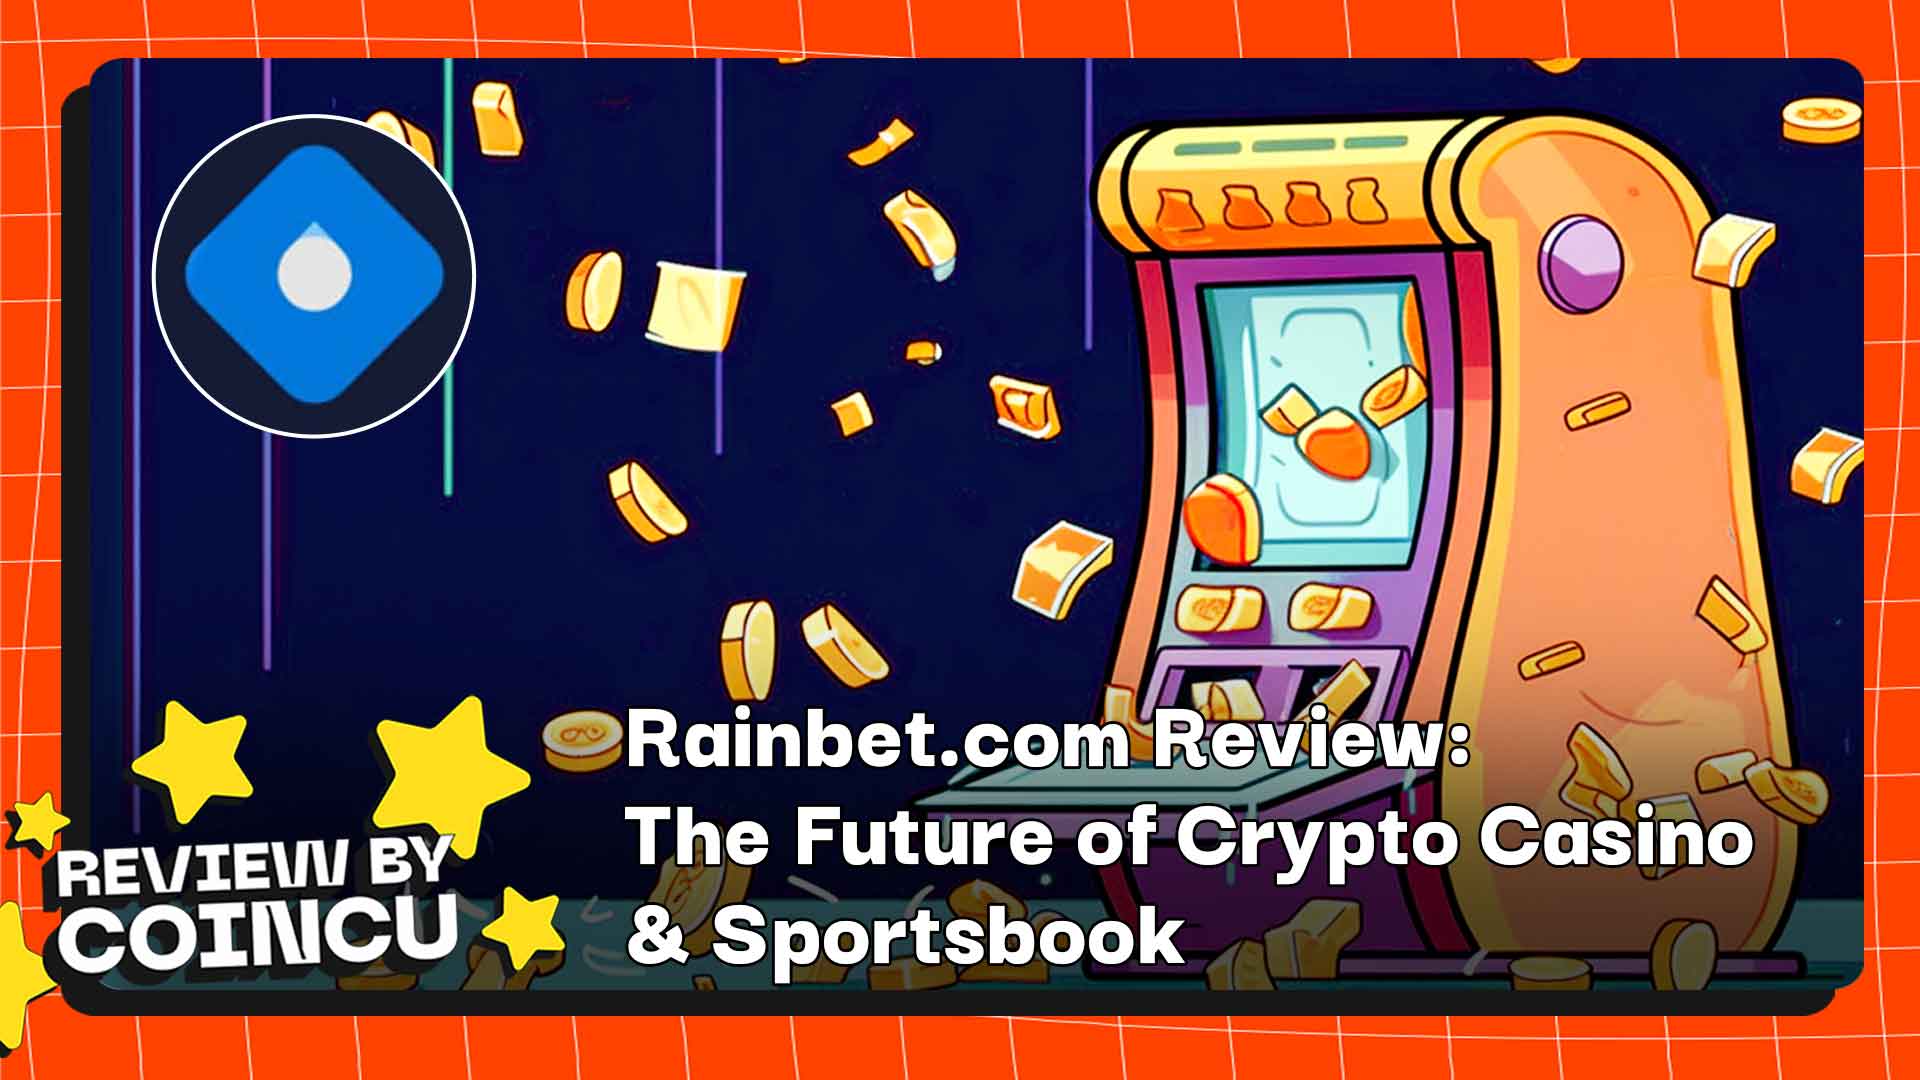 Rainbet.com Review: Die Zukunft von Krypto-Casino und Sportwetten